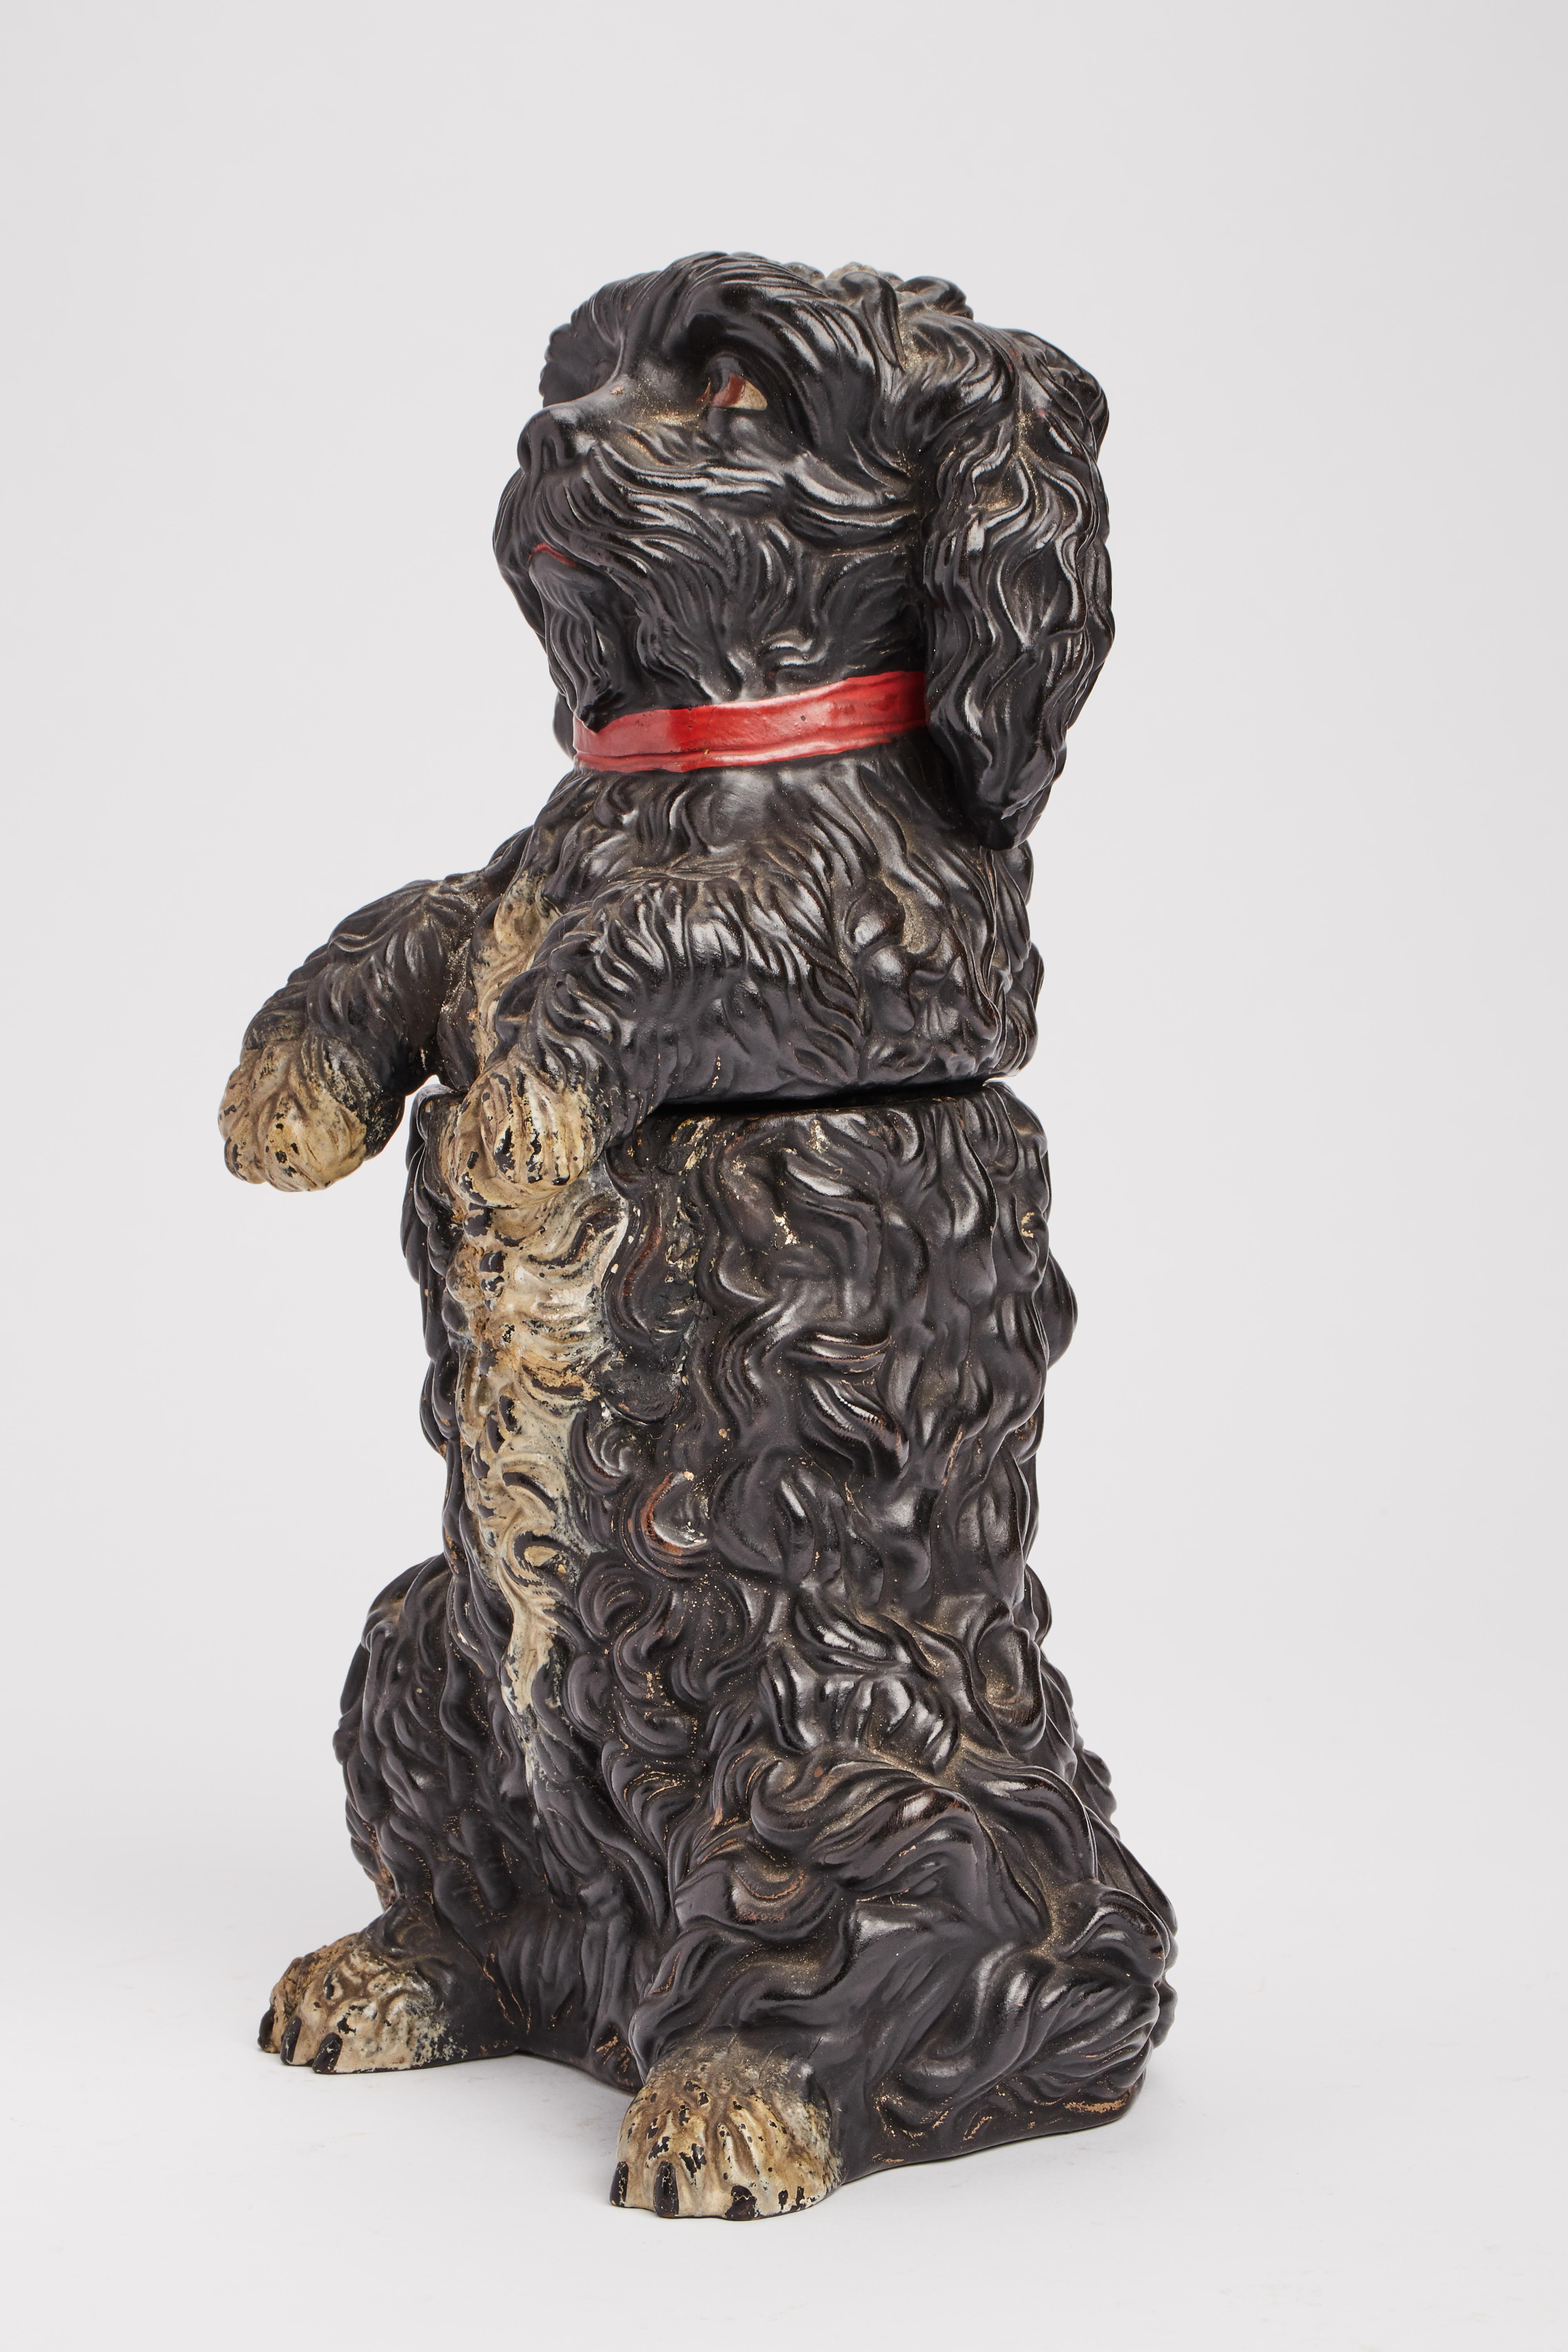 Sculpture en terre cuite peinte, représentant un chien caniche noir avec un collier rouge, faisant office de porte-tabac. Autriche vers 1880.